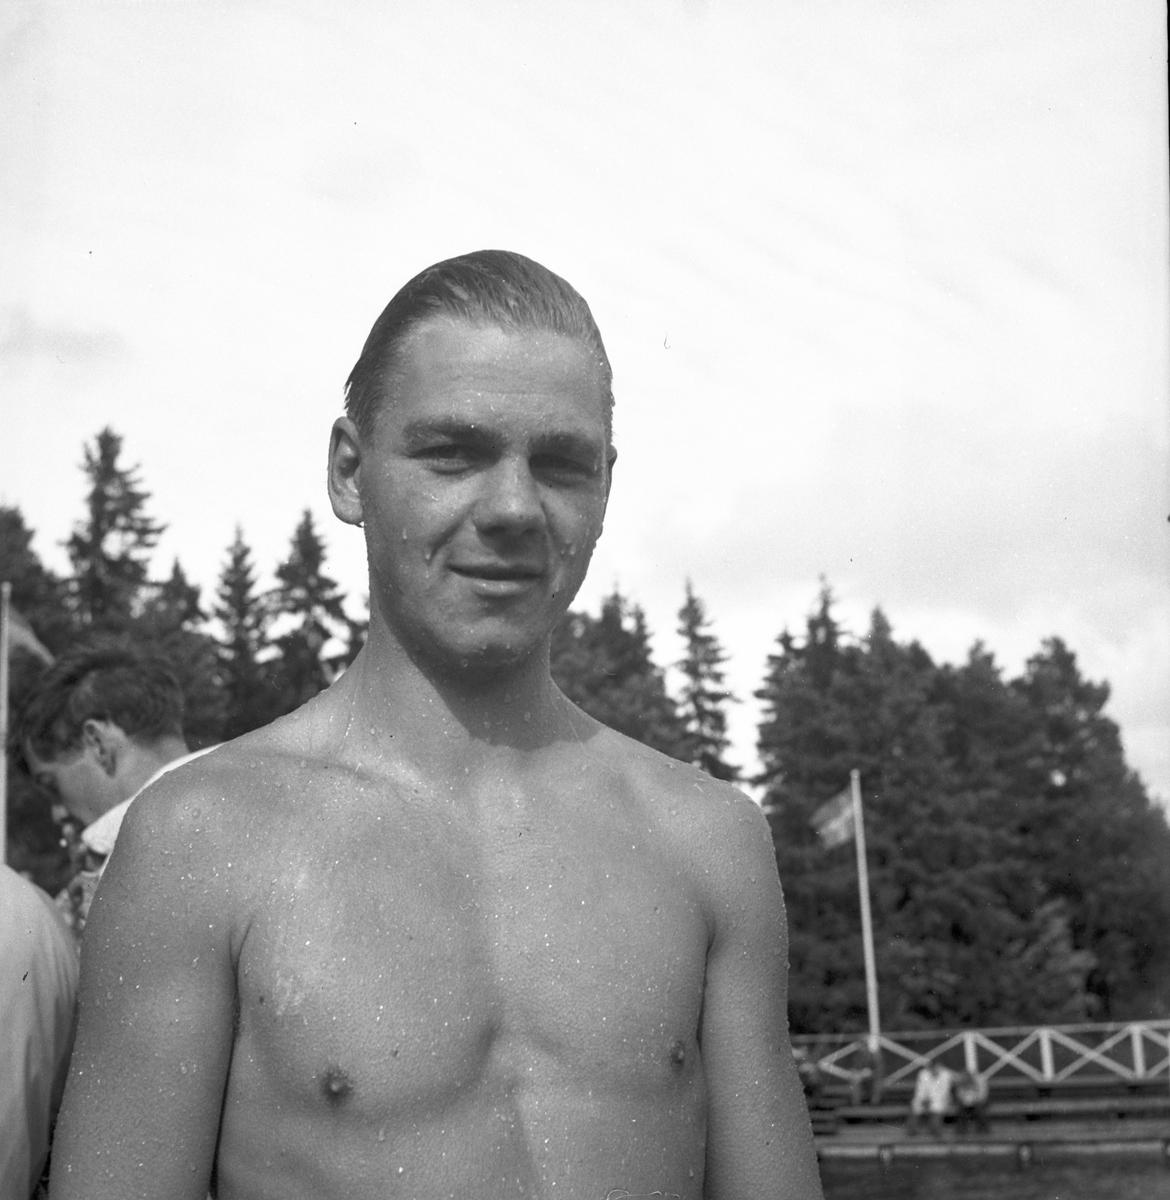 Simhoppare, Johansson

Dalarna 1946.

